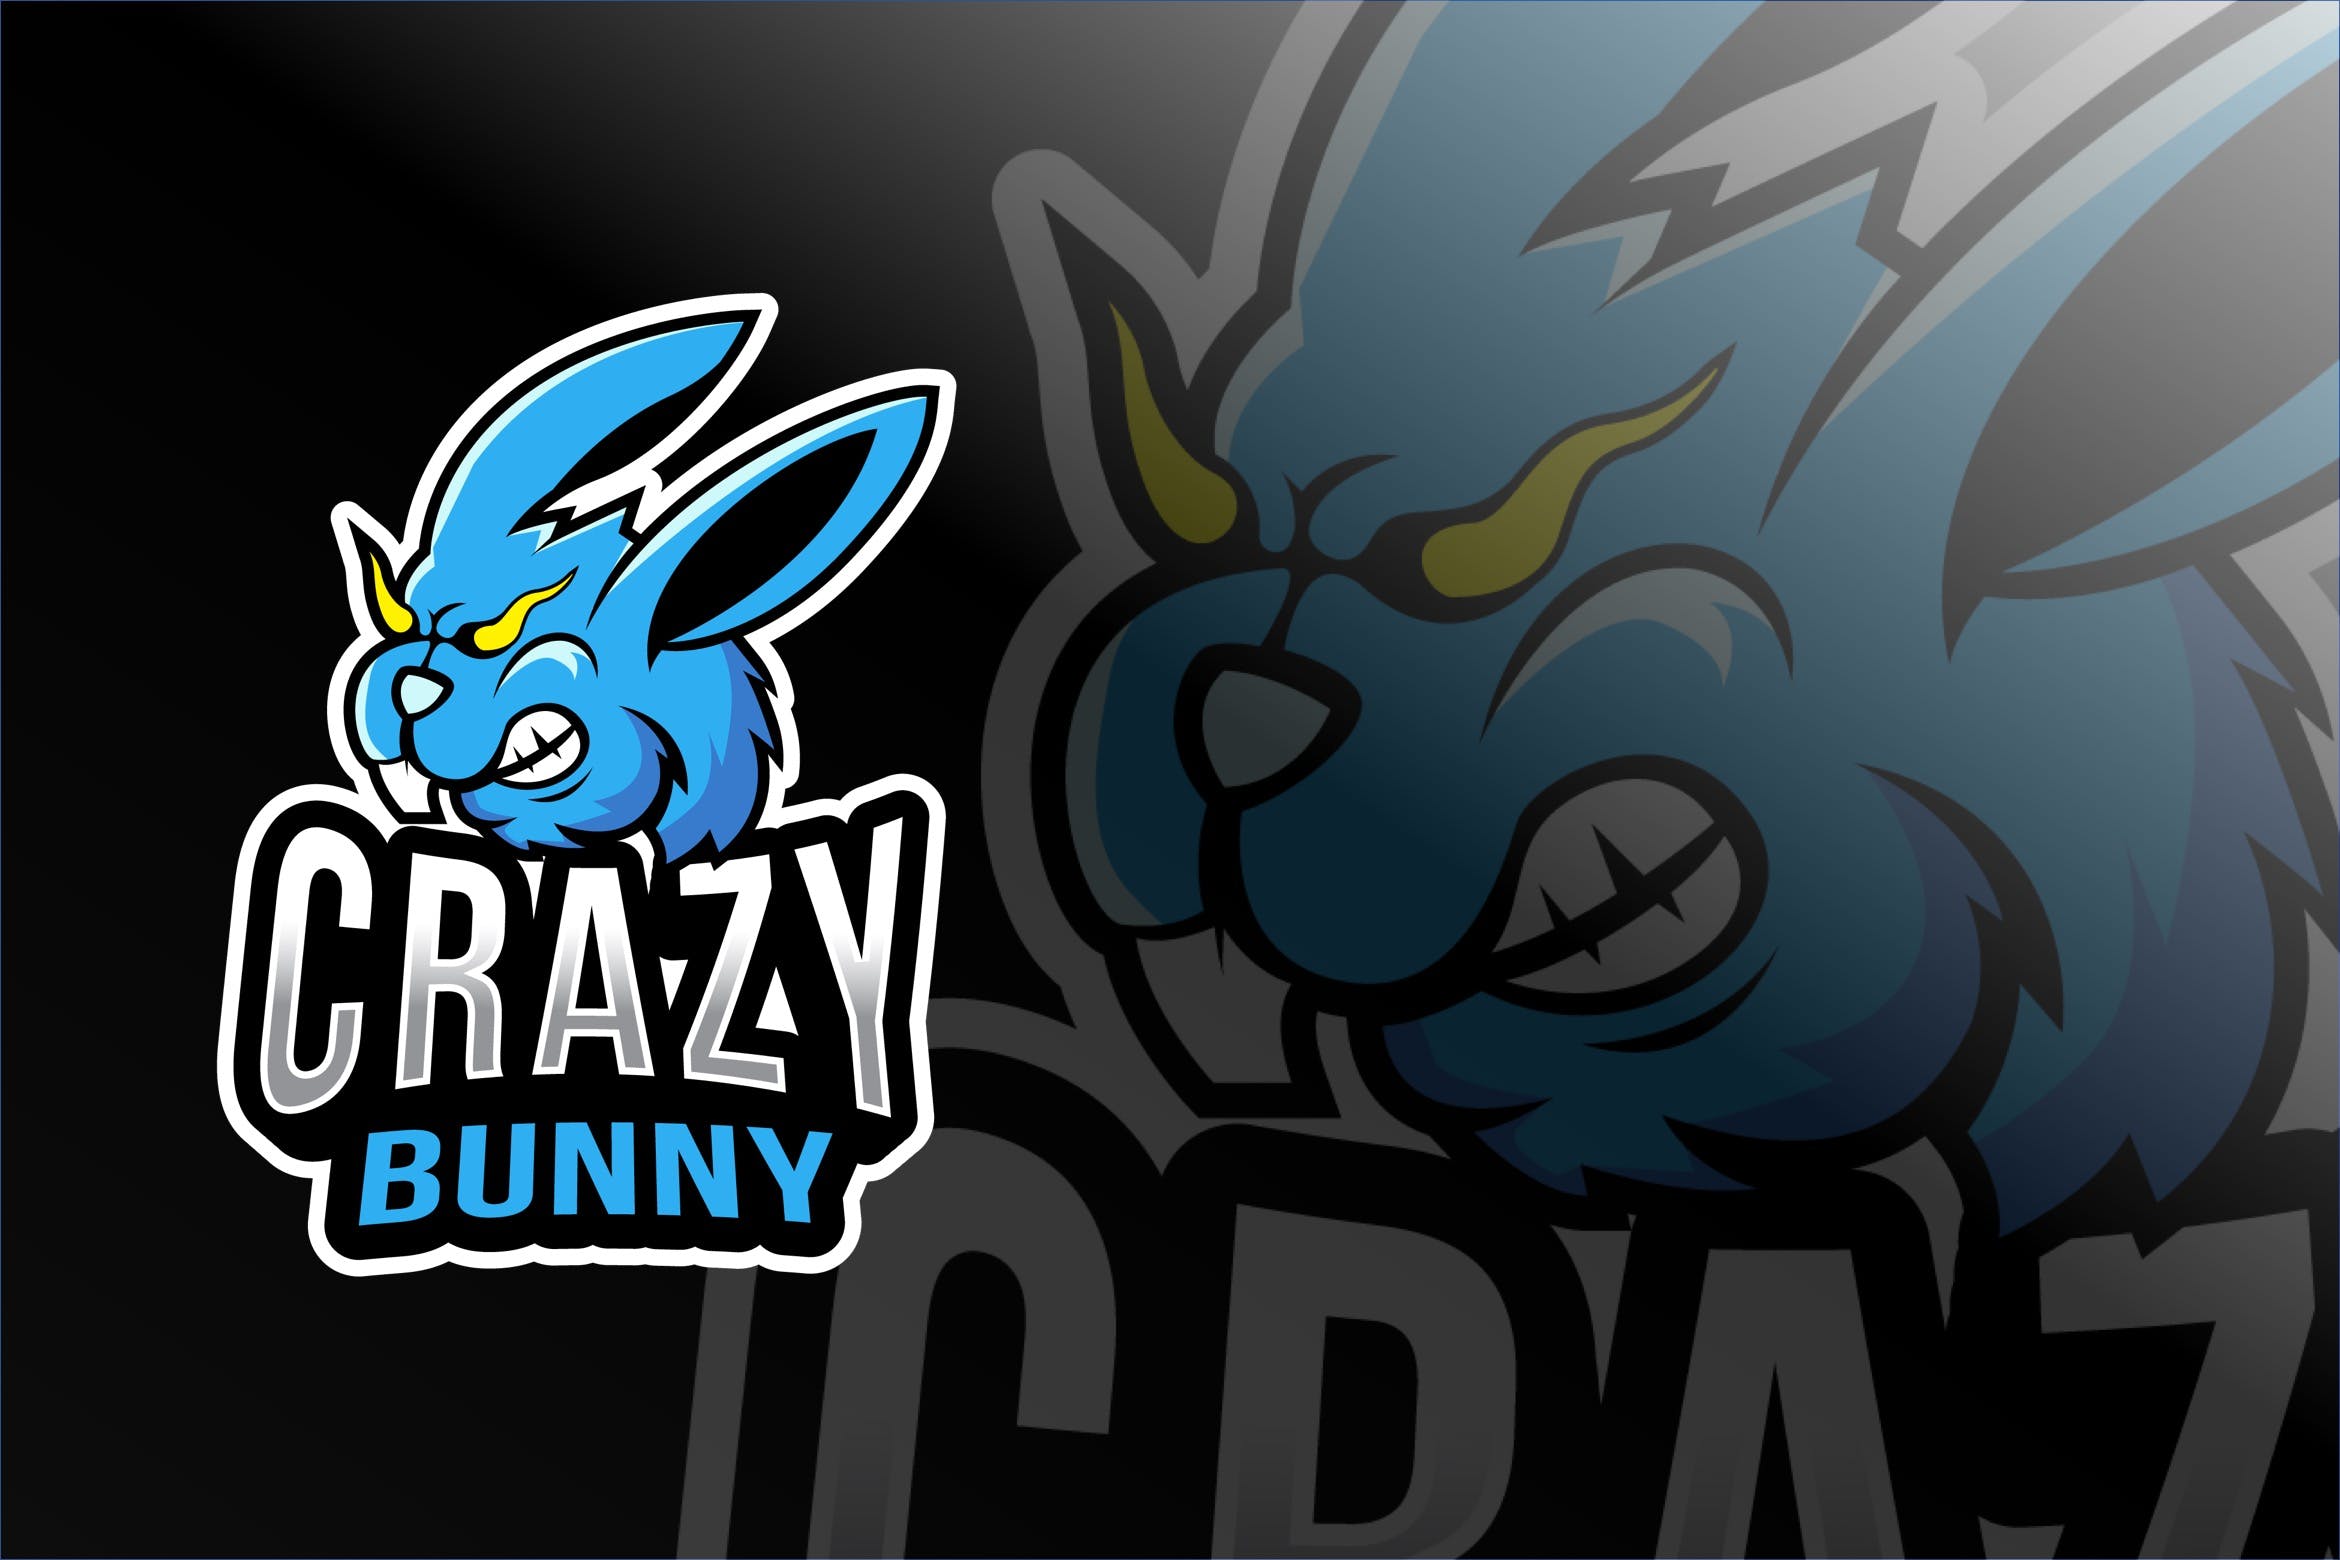 疯狂兔子卡通形象电子竞技Logo标志模板 Crazy Bunny Esport Logo Template